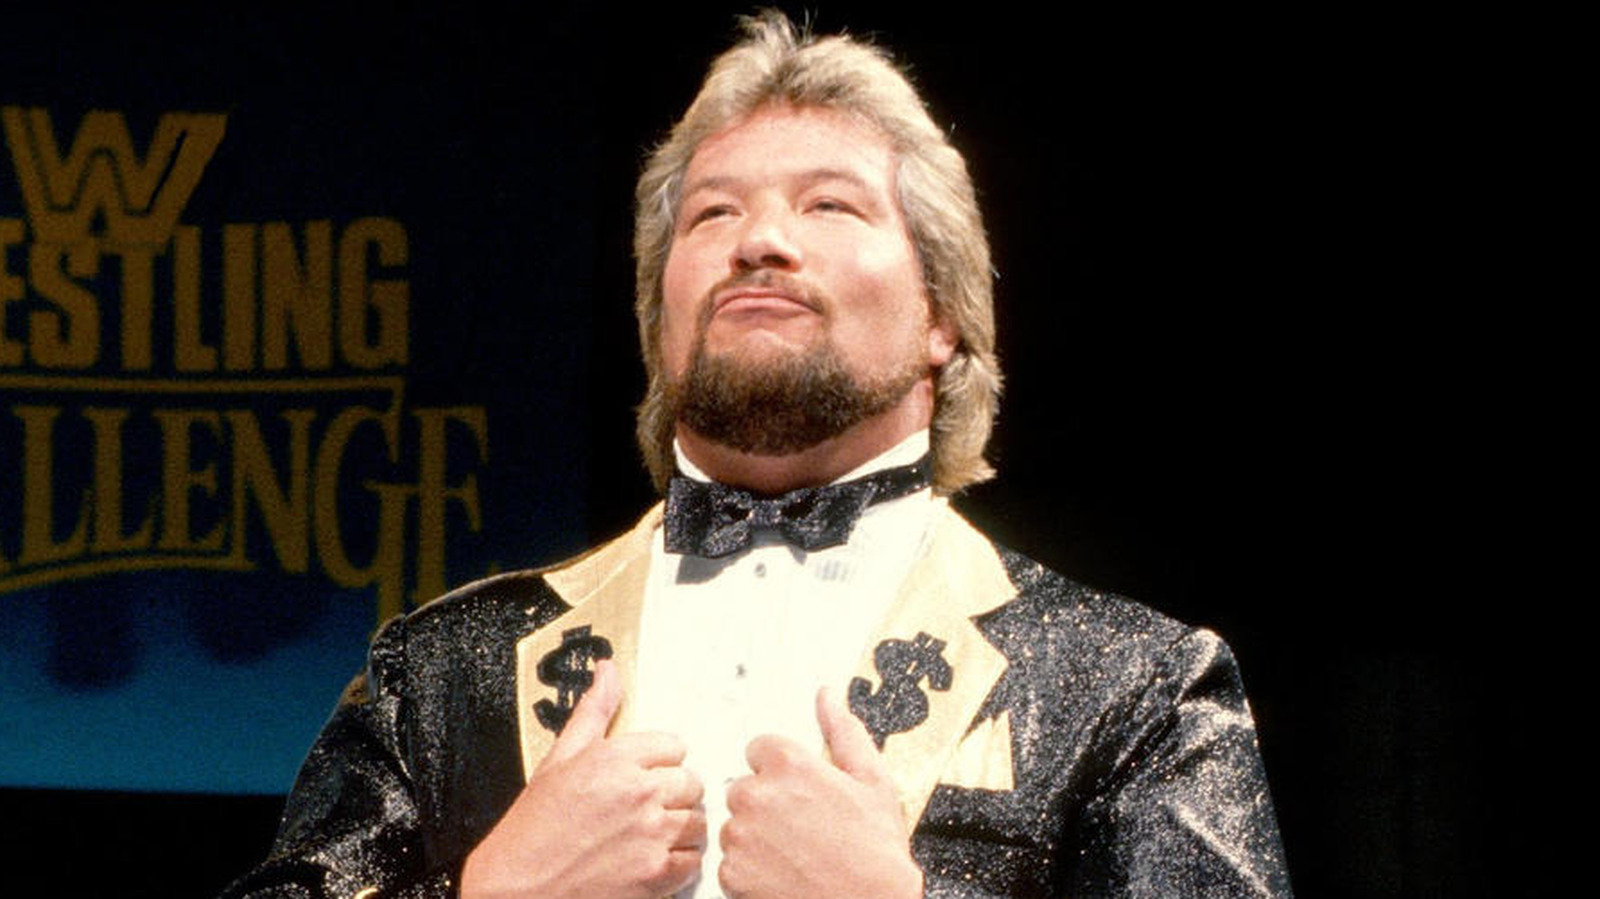 Ted DiBiase recuerda su lucha contra Randy Savage en WWE WrestleMania 4